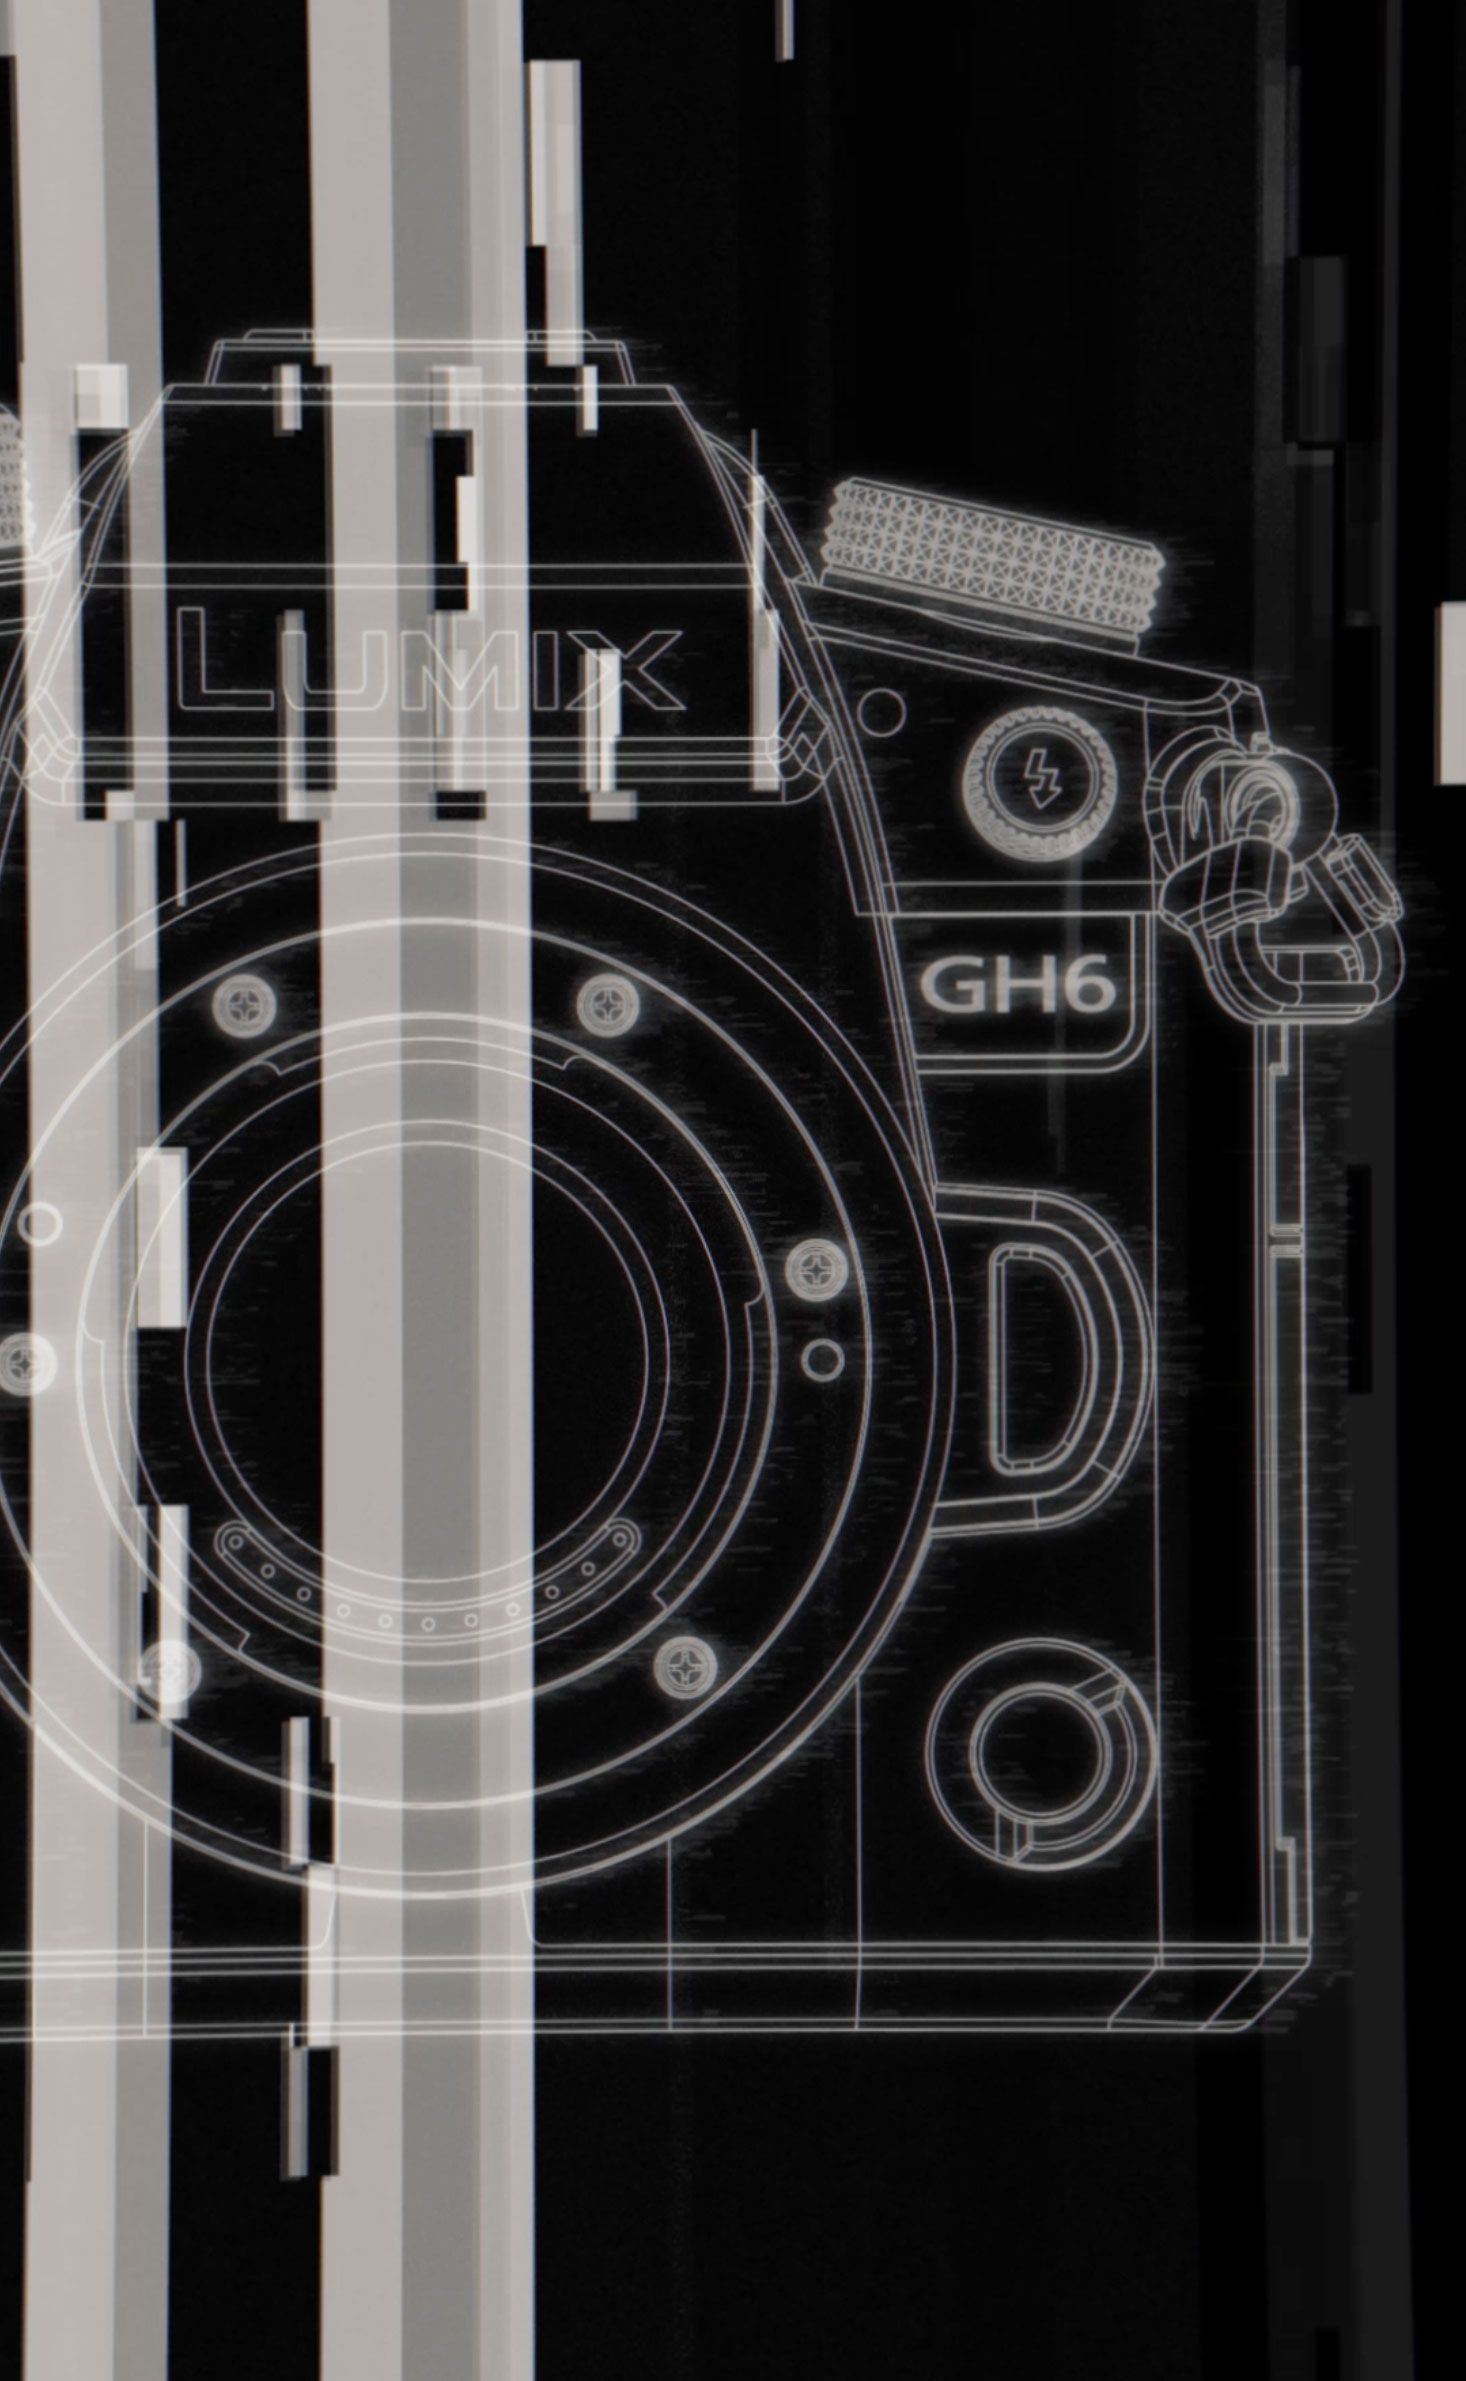 LUMIX CINEMA | Panasonic LUMIX GH6をテーマにした映像作品４本の制作レポート。